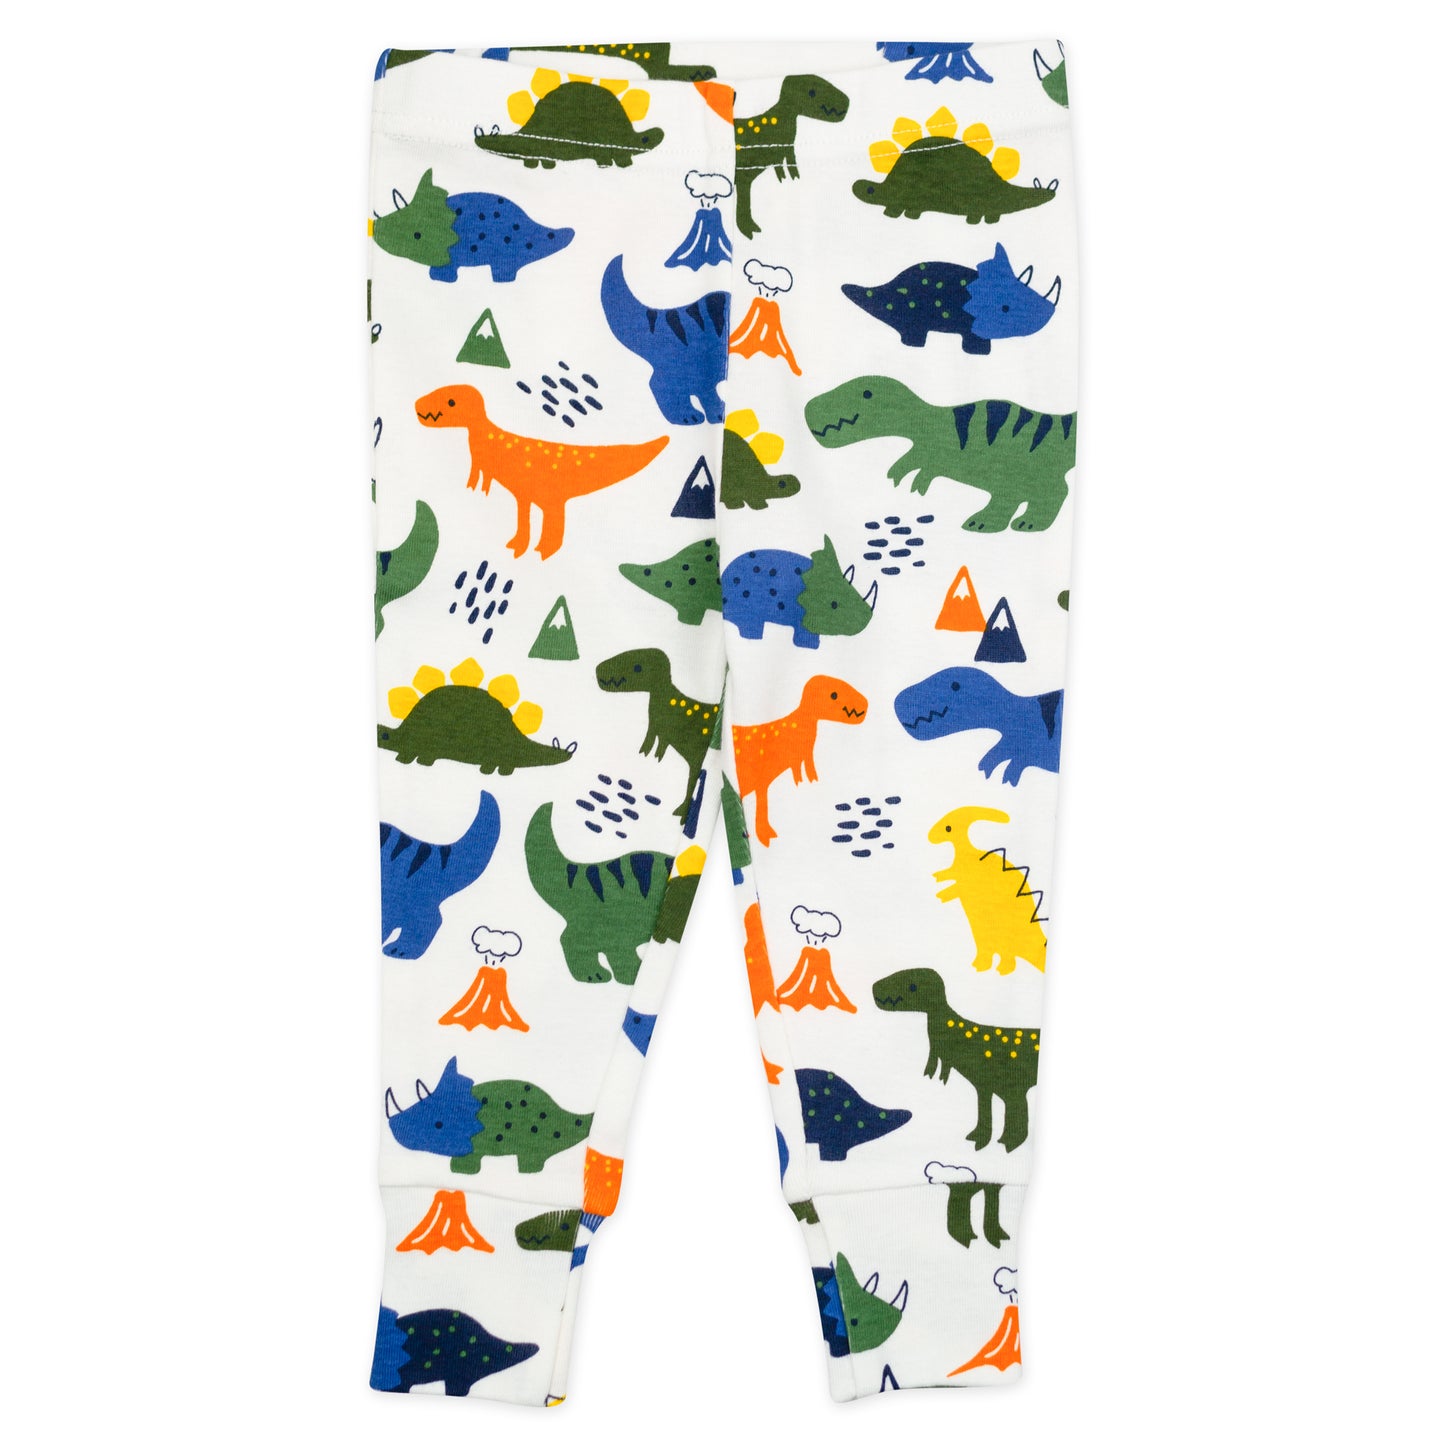 4-Piece Organic Cotton Pajama Set in Dinosaur Print